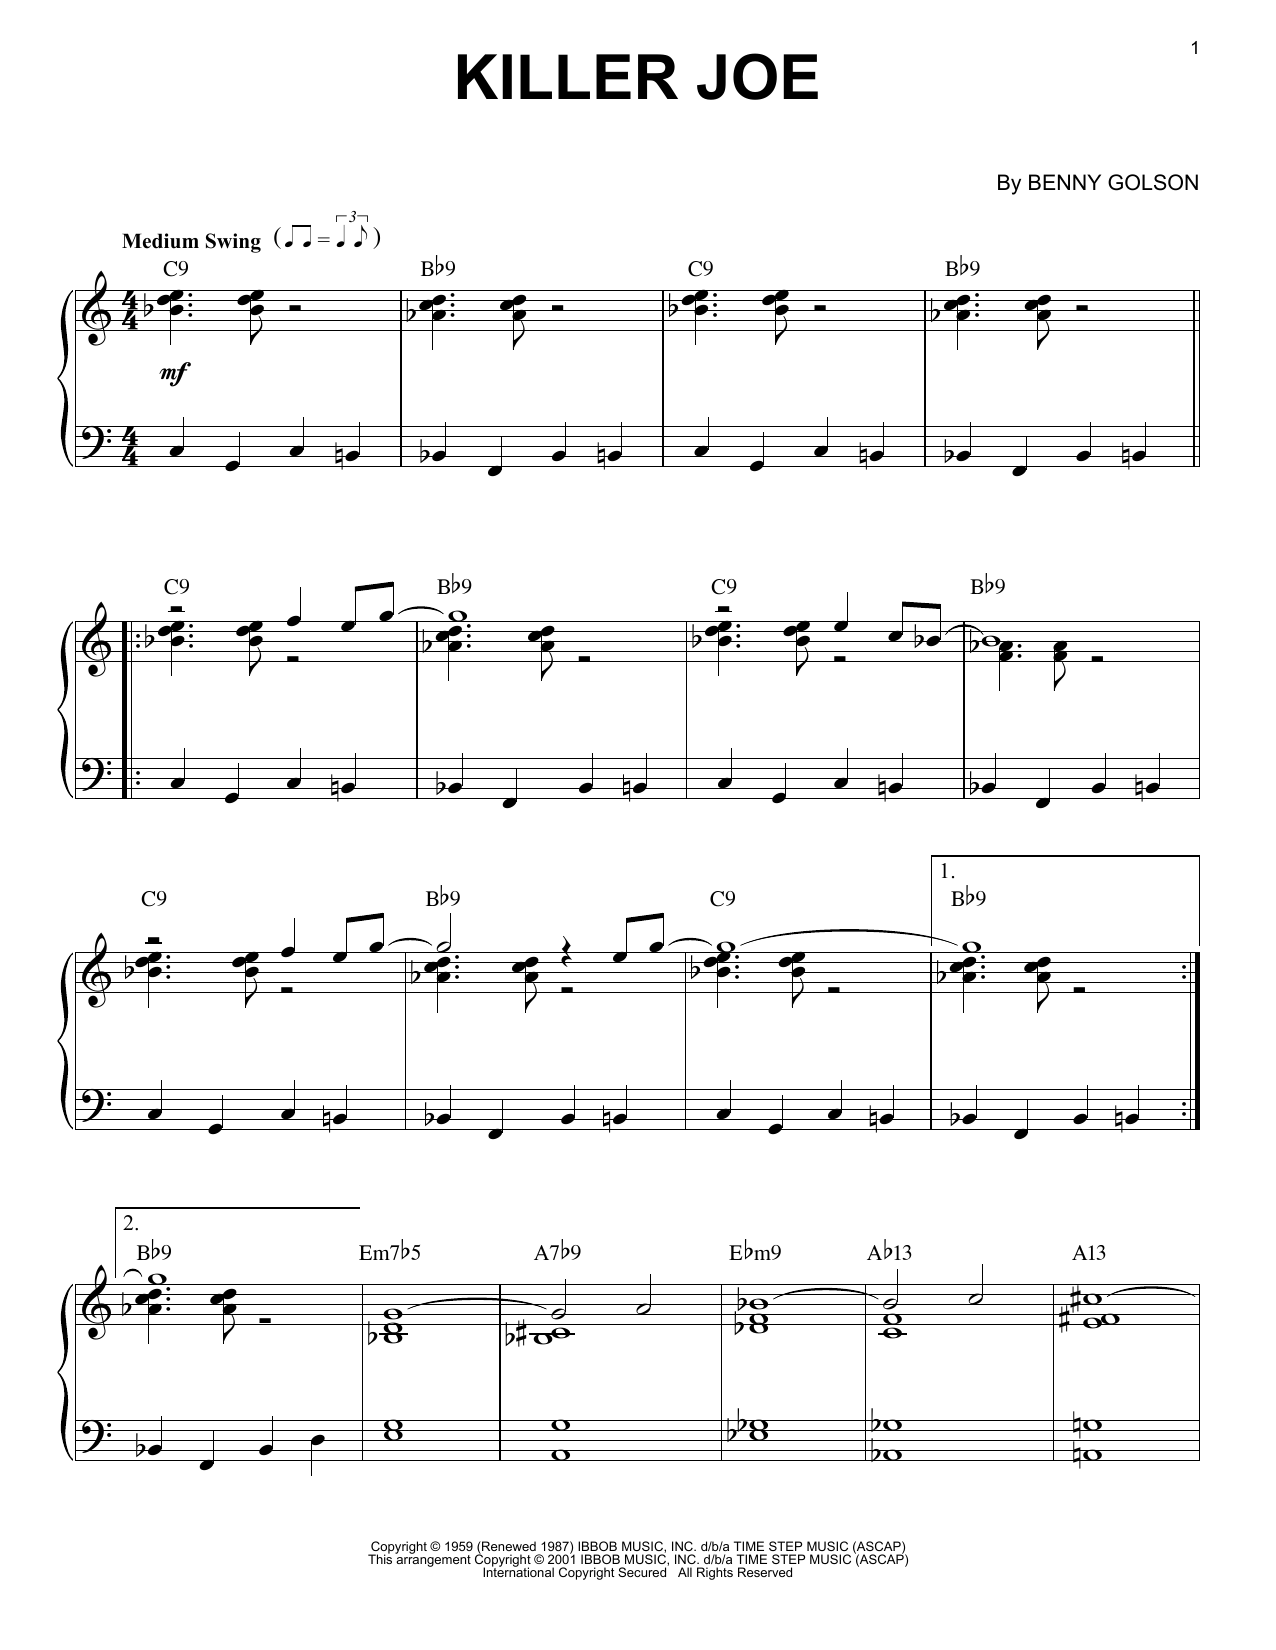 Benny Golson Killer Joe Sheet Music Notes & Chords for Real Book – Melody, Lyrics & Chords - Download or Print PDF